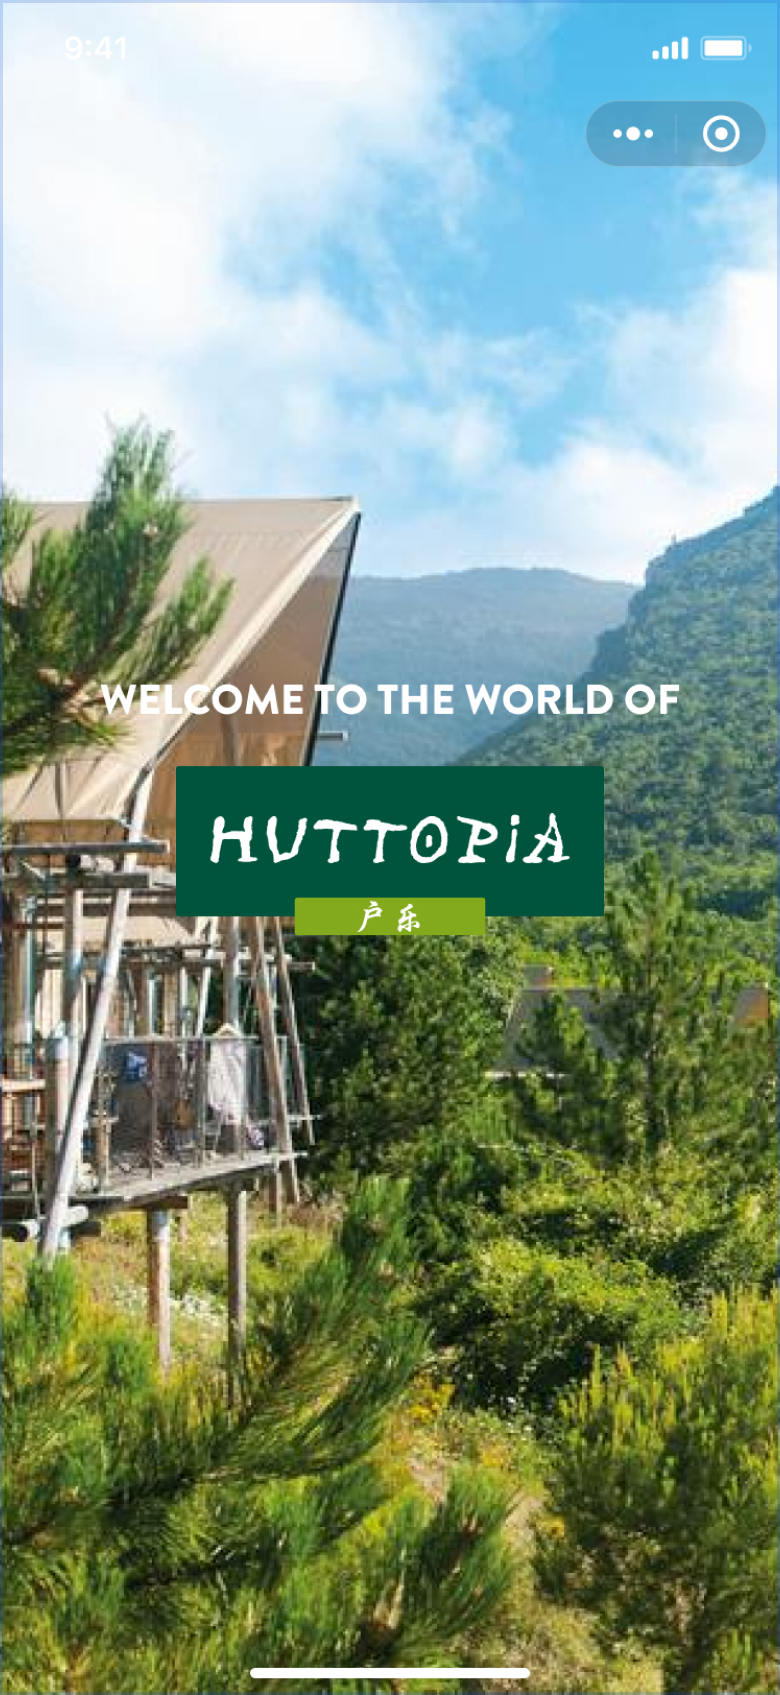 Huttopia WeChat Mini Program Launch Screen